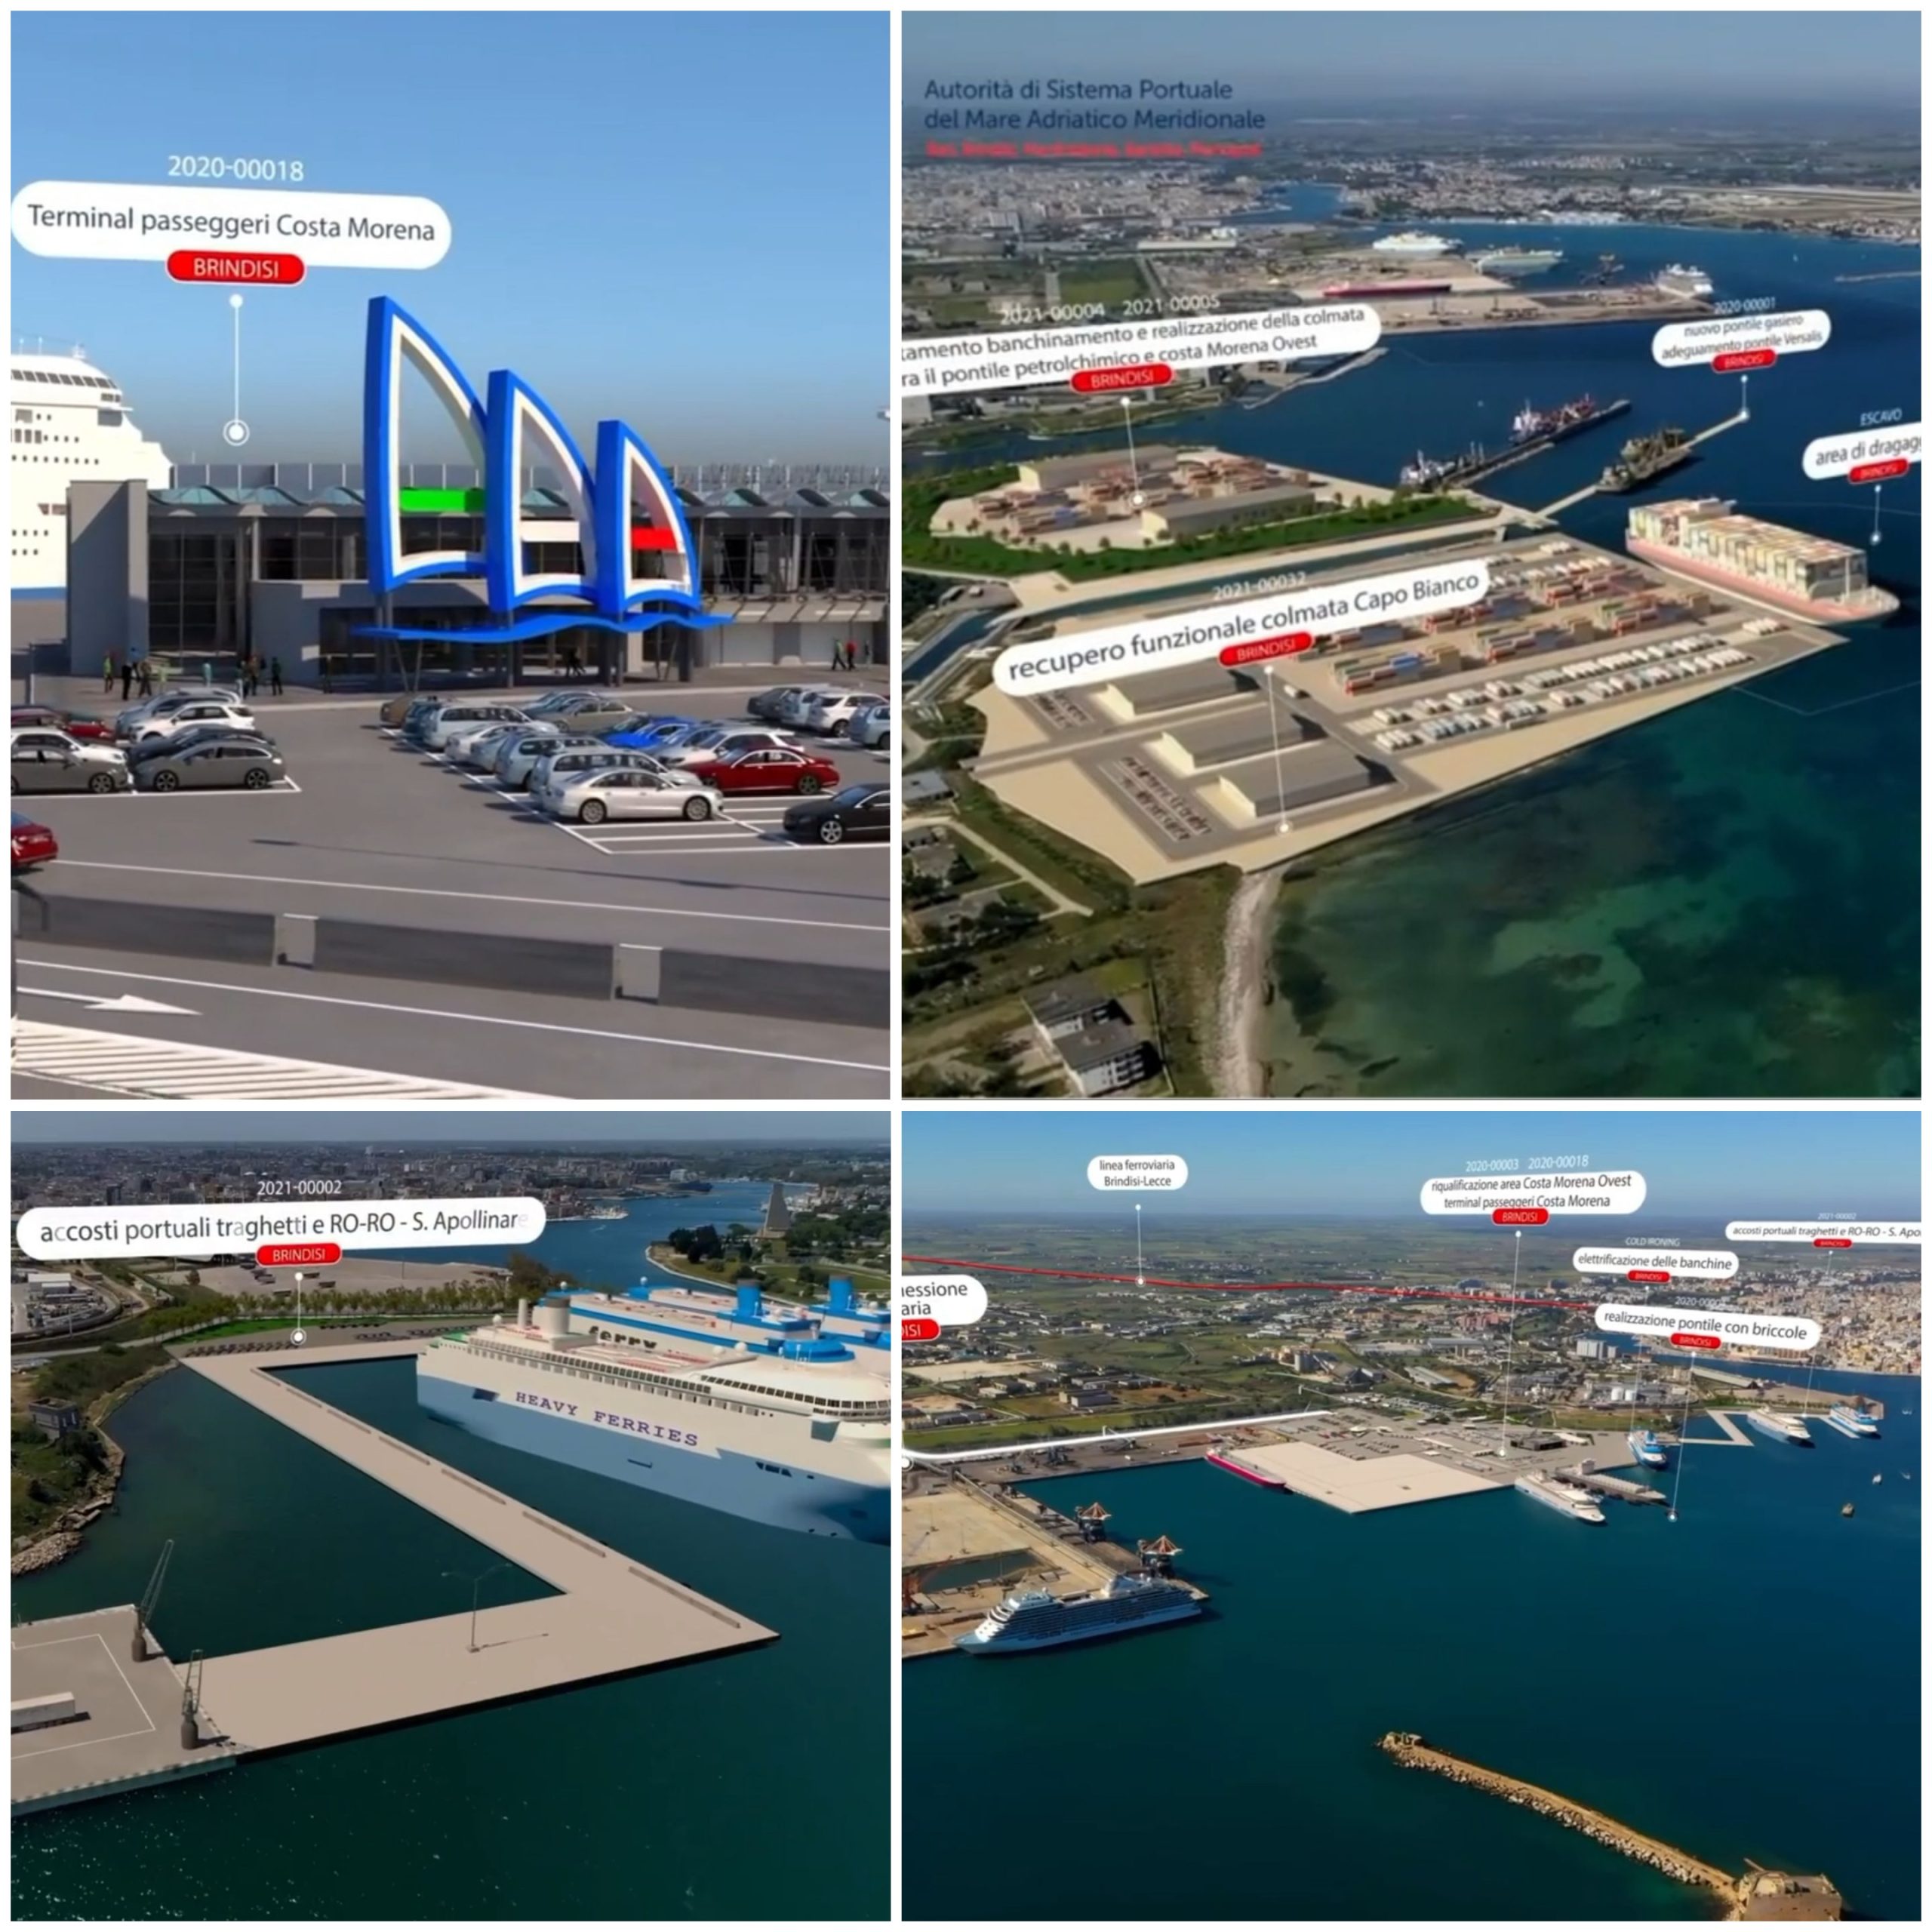 A Dubai presentato il nuovo porto di Brindisi. Stazione marittima e Sant’Apollinare, soluzione vicina. Patroni Griffi: “Presto visite dagli Emirati”